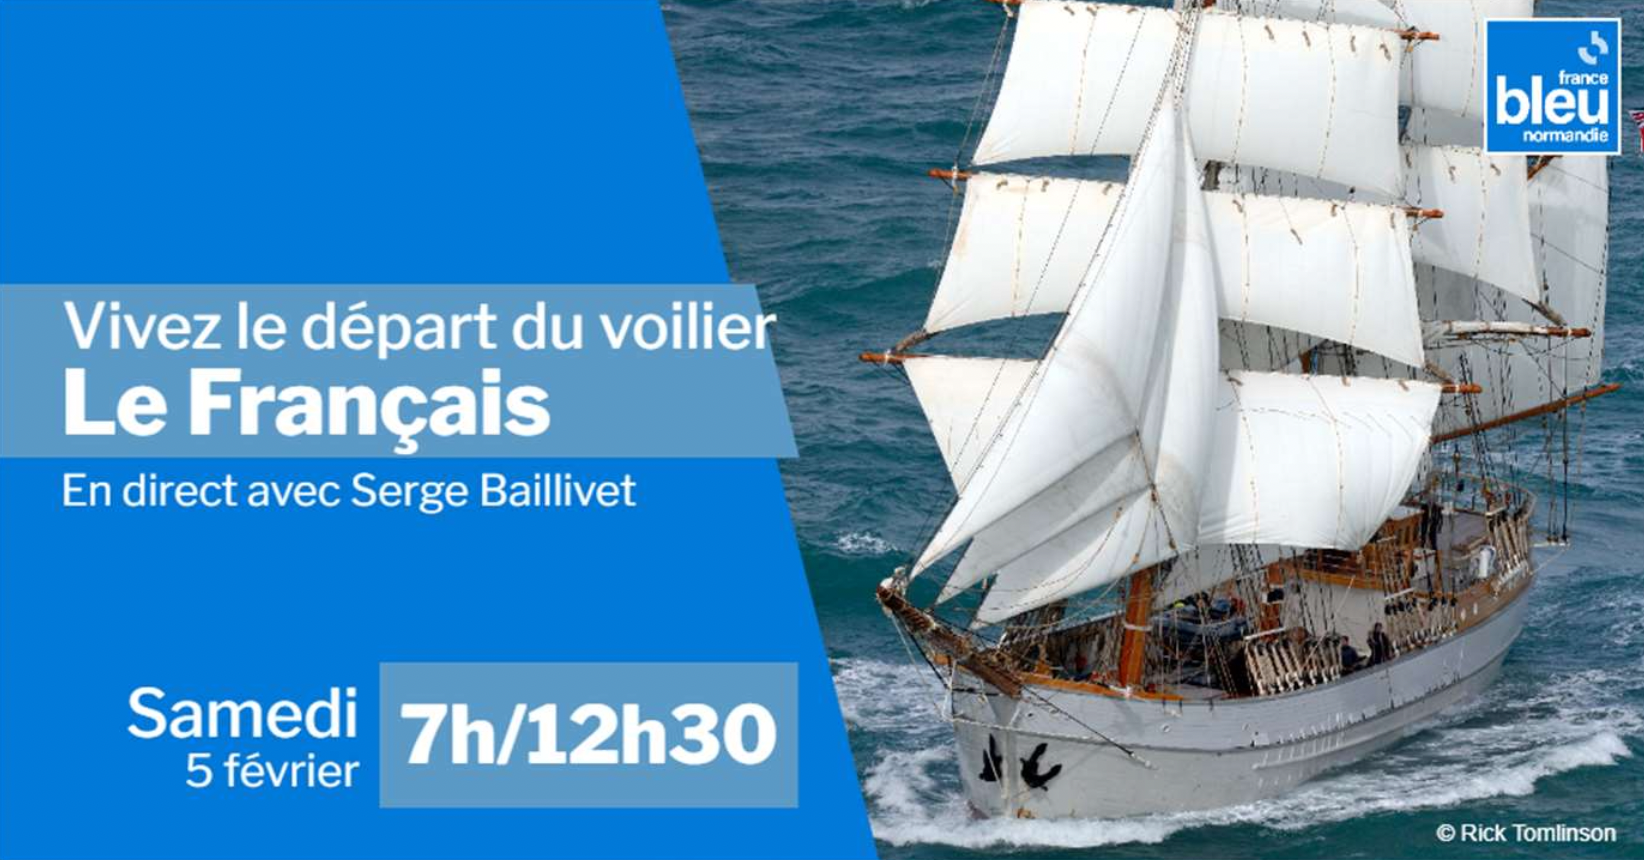 France Bleu Normandie embarque sur le voilier Le Français